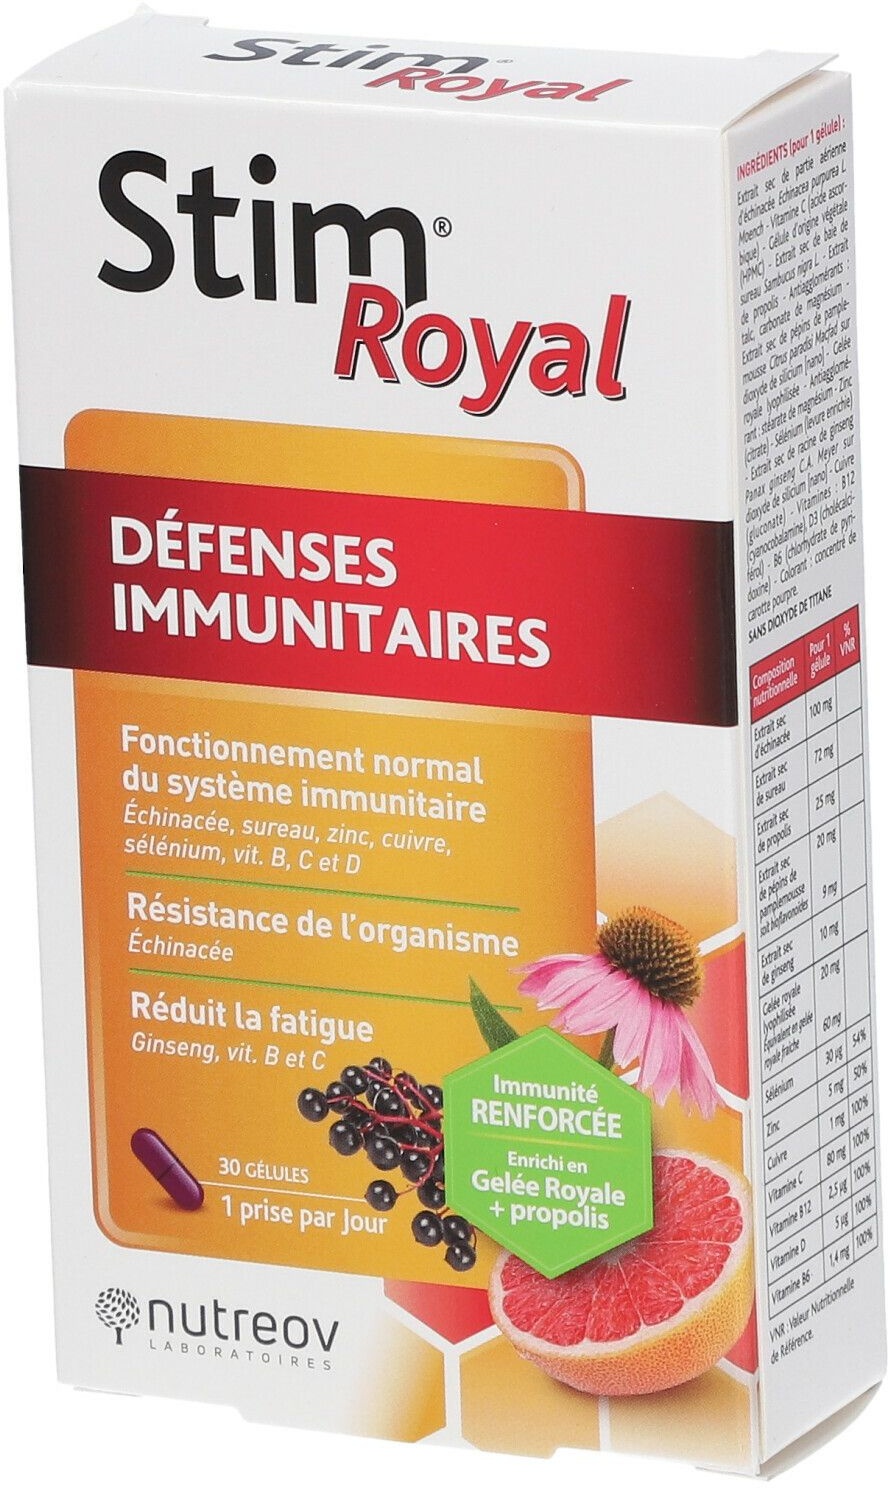 Nutreov Physcience Stim® Royal Défenses Immunitaires Gélules 30 pc(s) capsule(s)